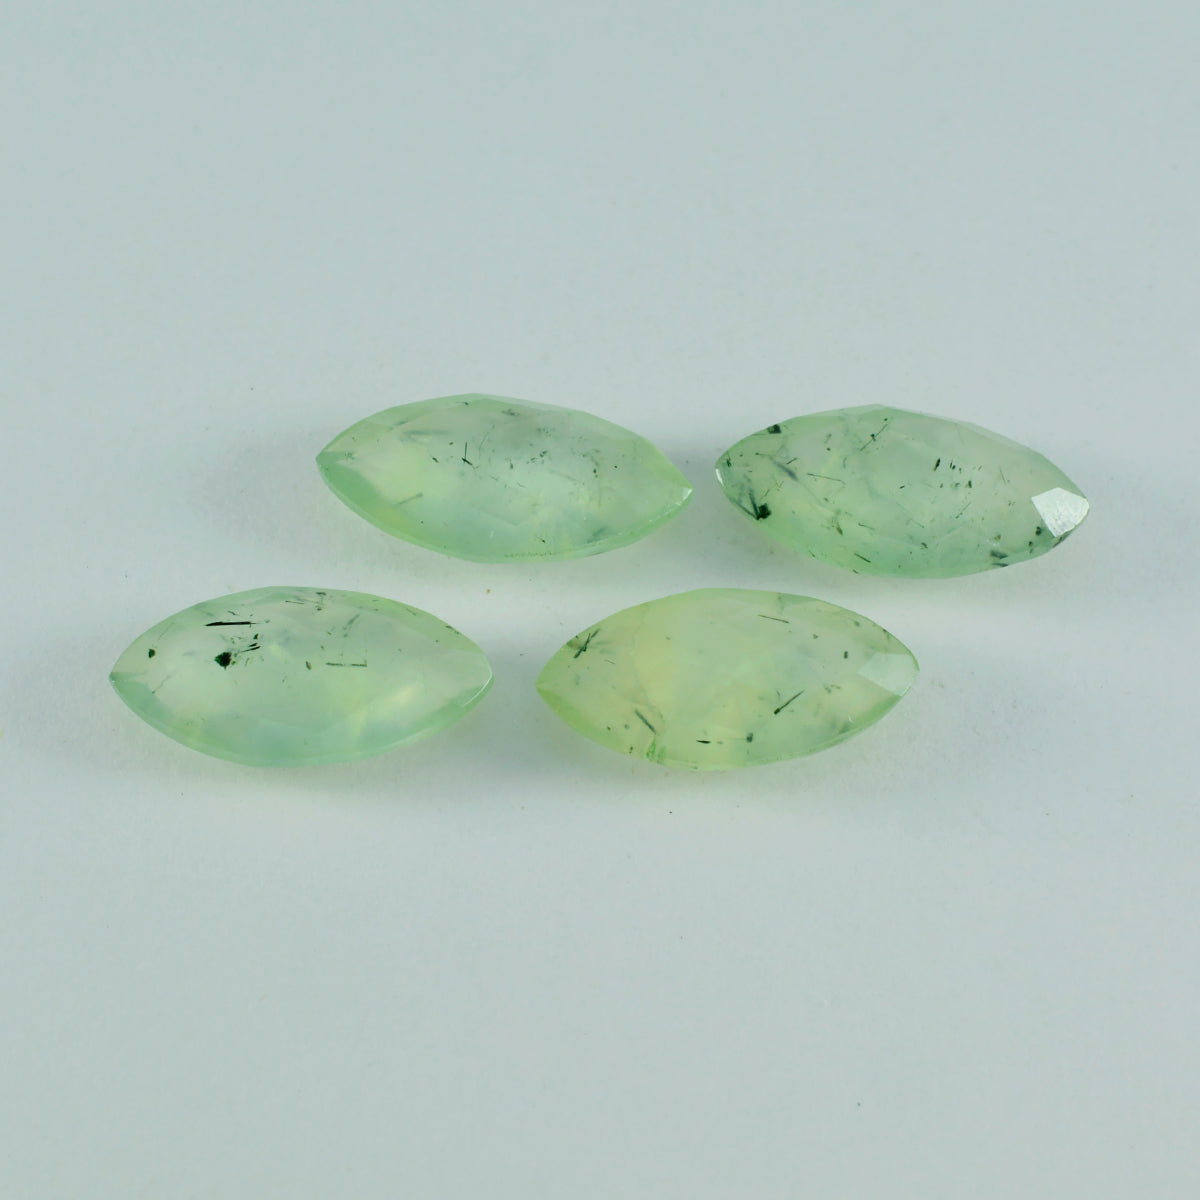 riyogems 1шт зеленый пренит ограненный 6х12 мм форма маркиза качество А+ отдельные камни